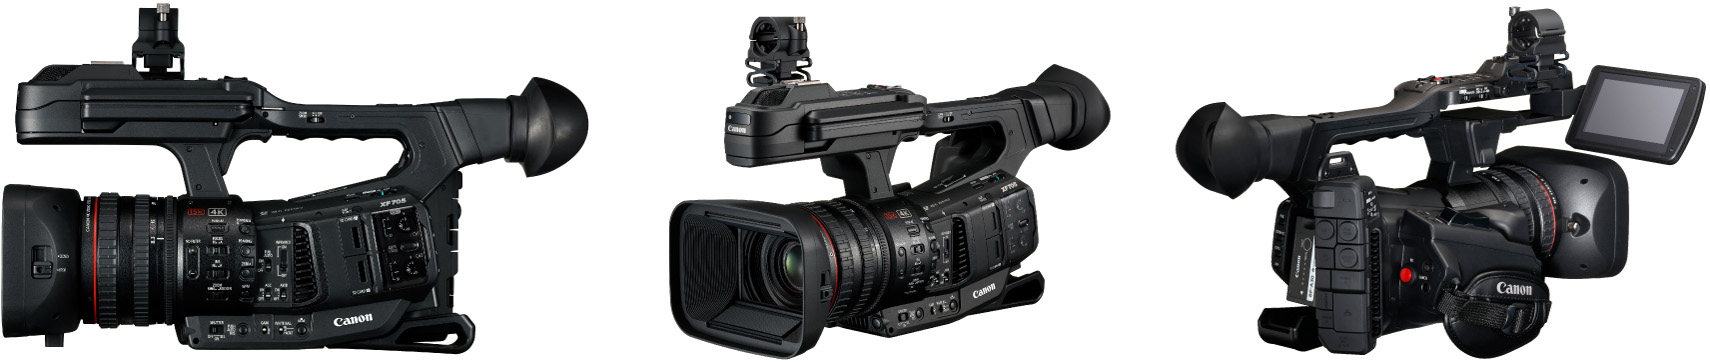 XF705专业数码摄像机